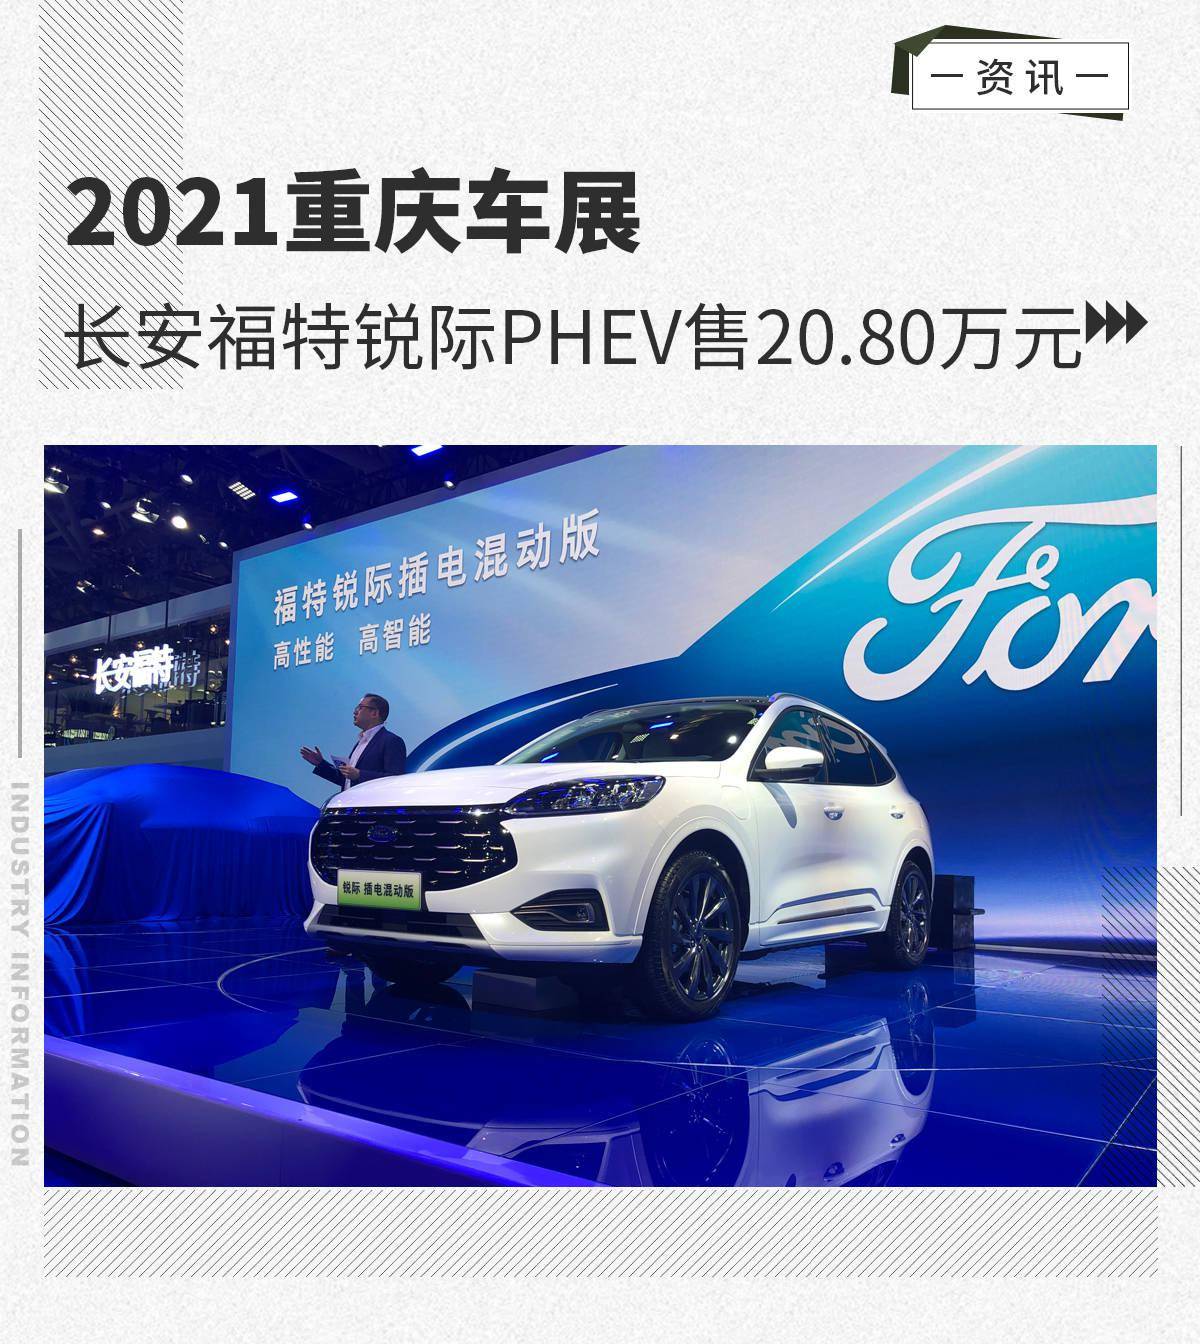 2021重庆车展:长安福特锐际phev售20.80万元